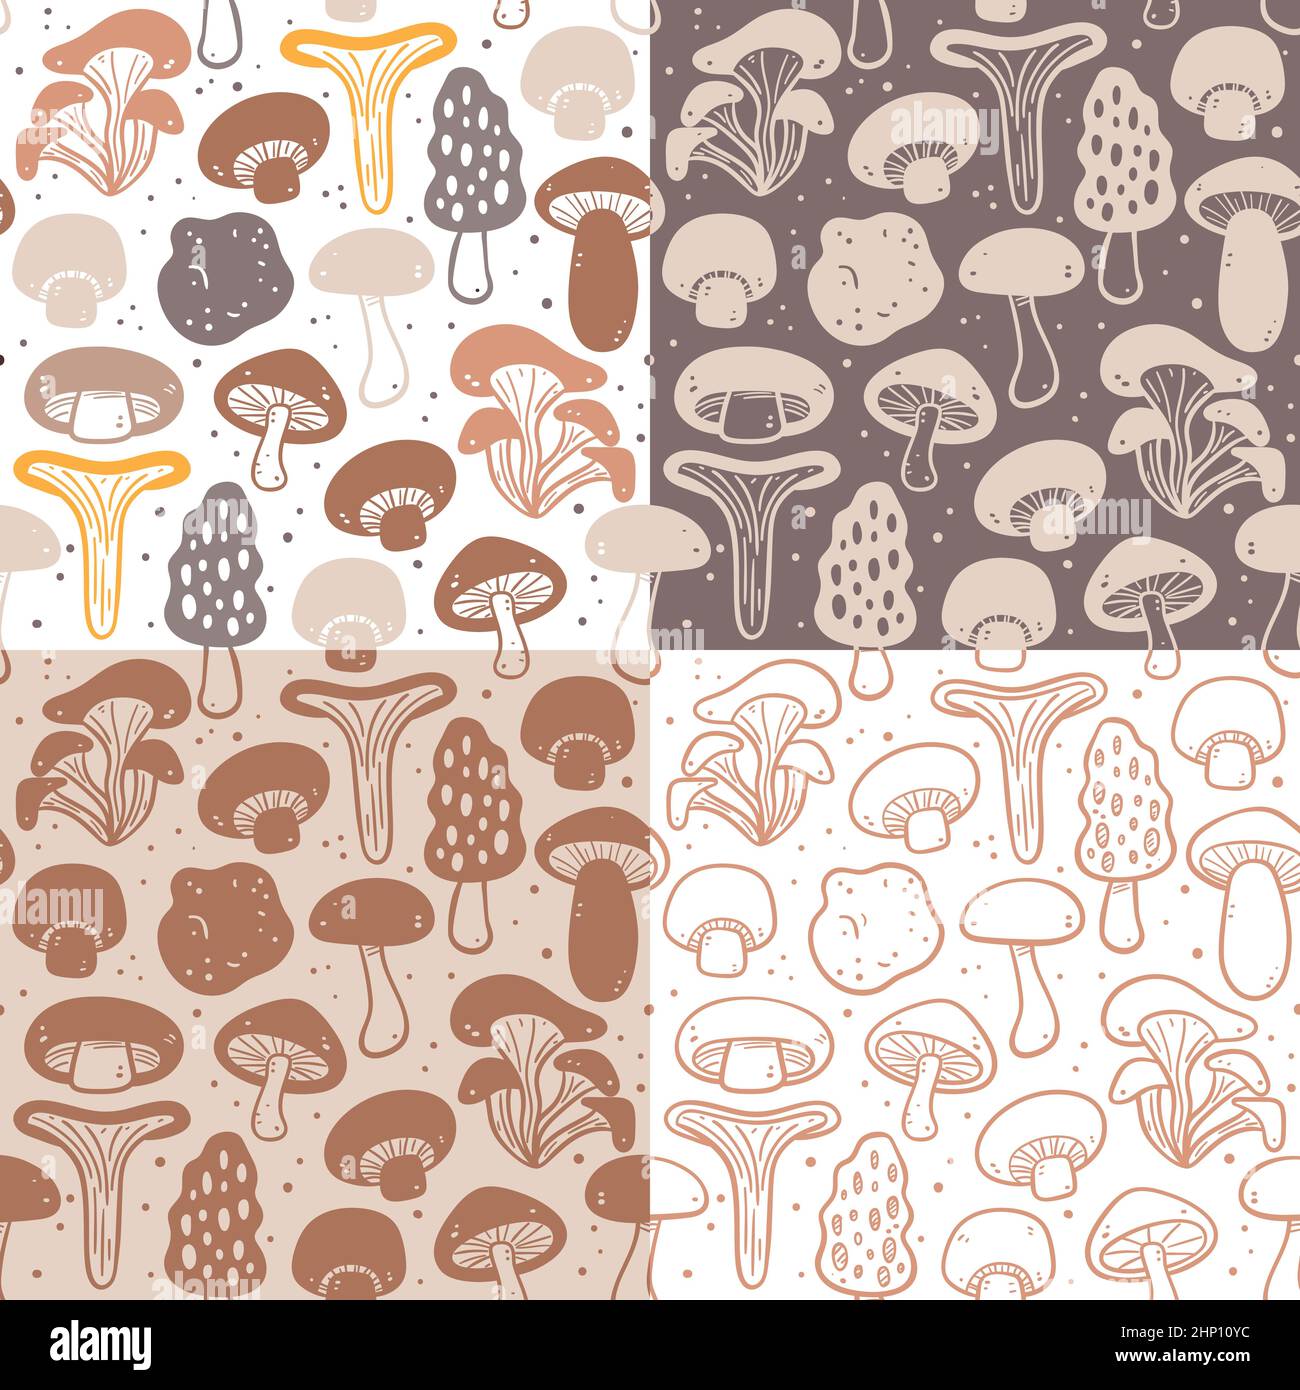 Kollektion mit nahtlosen Mustern für Pilze. Abbildung: Zutaten für das Kochen. Farbenfrohe, monochrome Silhouetten und Doodle-Stil. Vektorgrafiken Stock Vektor